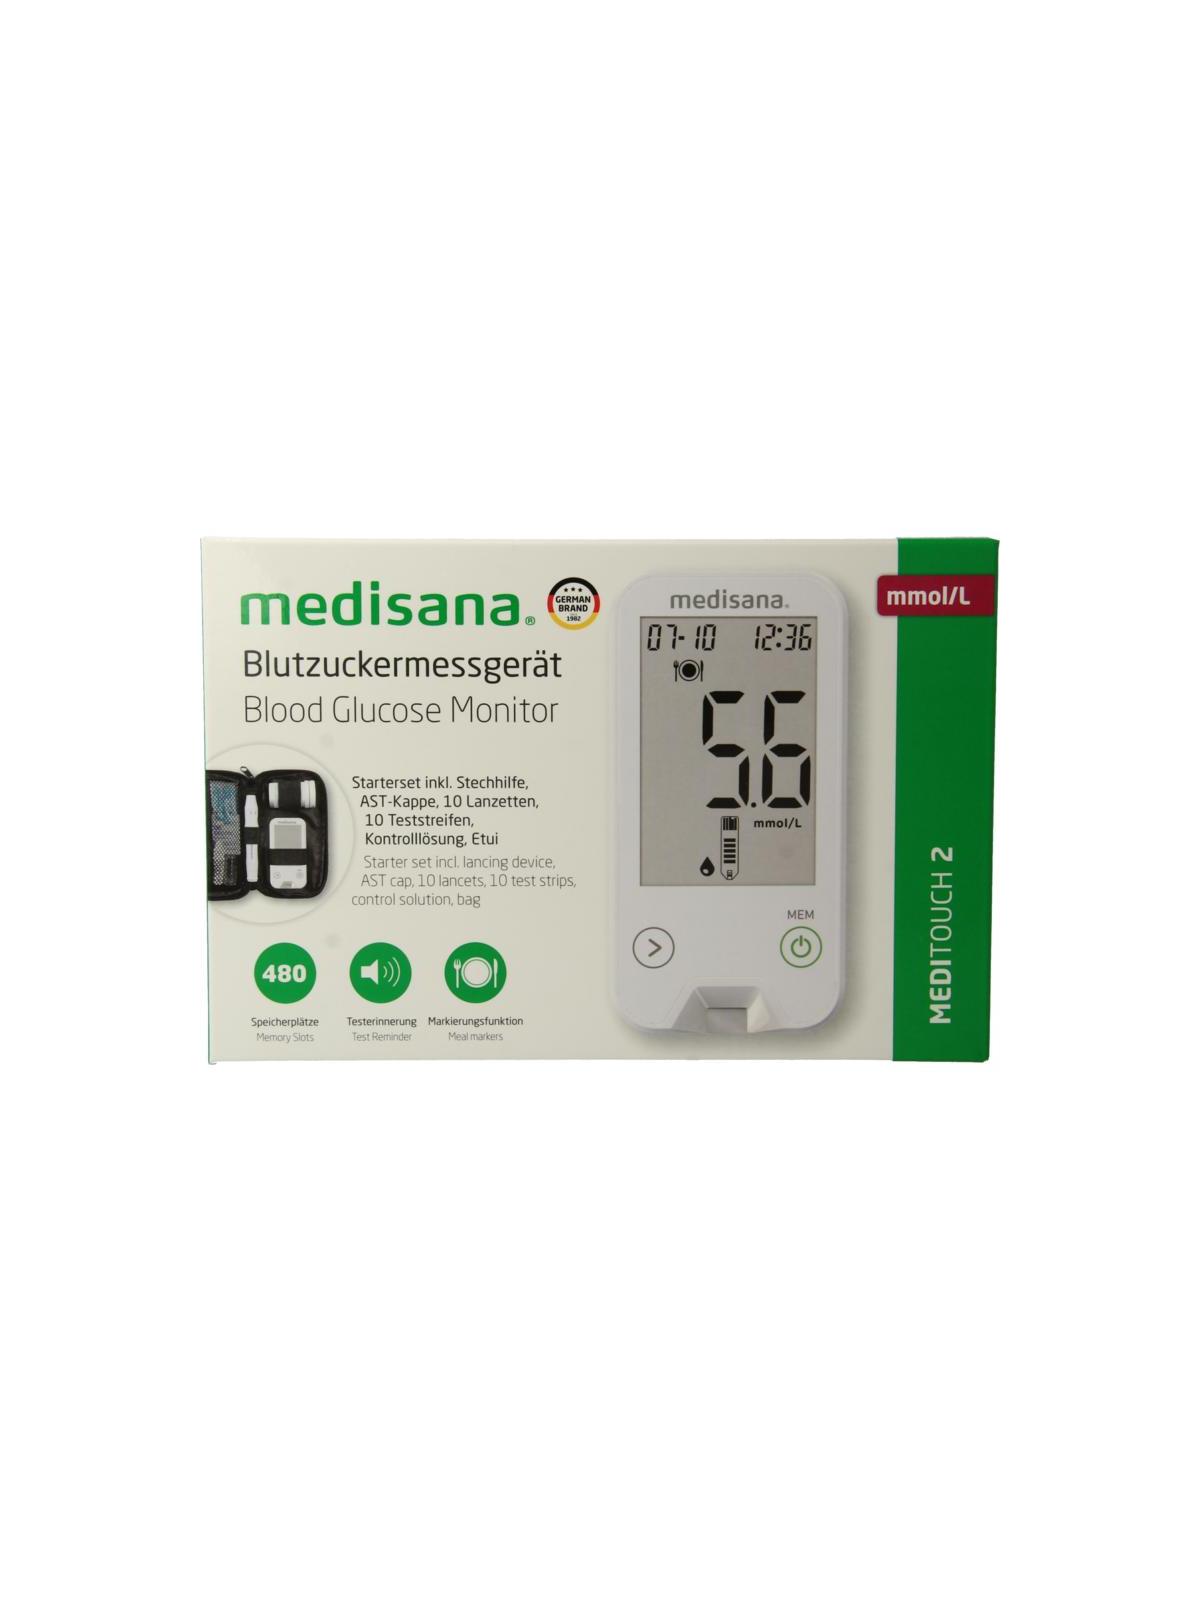 Niet essentieel het spoor wenkbrauw Medisana Meditouch 2 glucosemeter USB